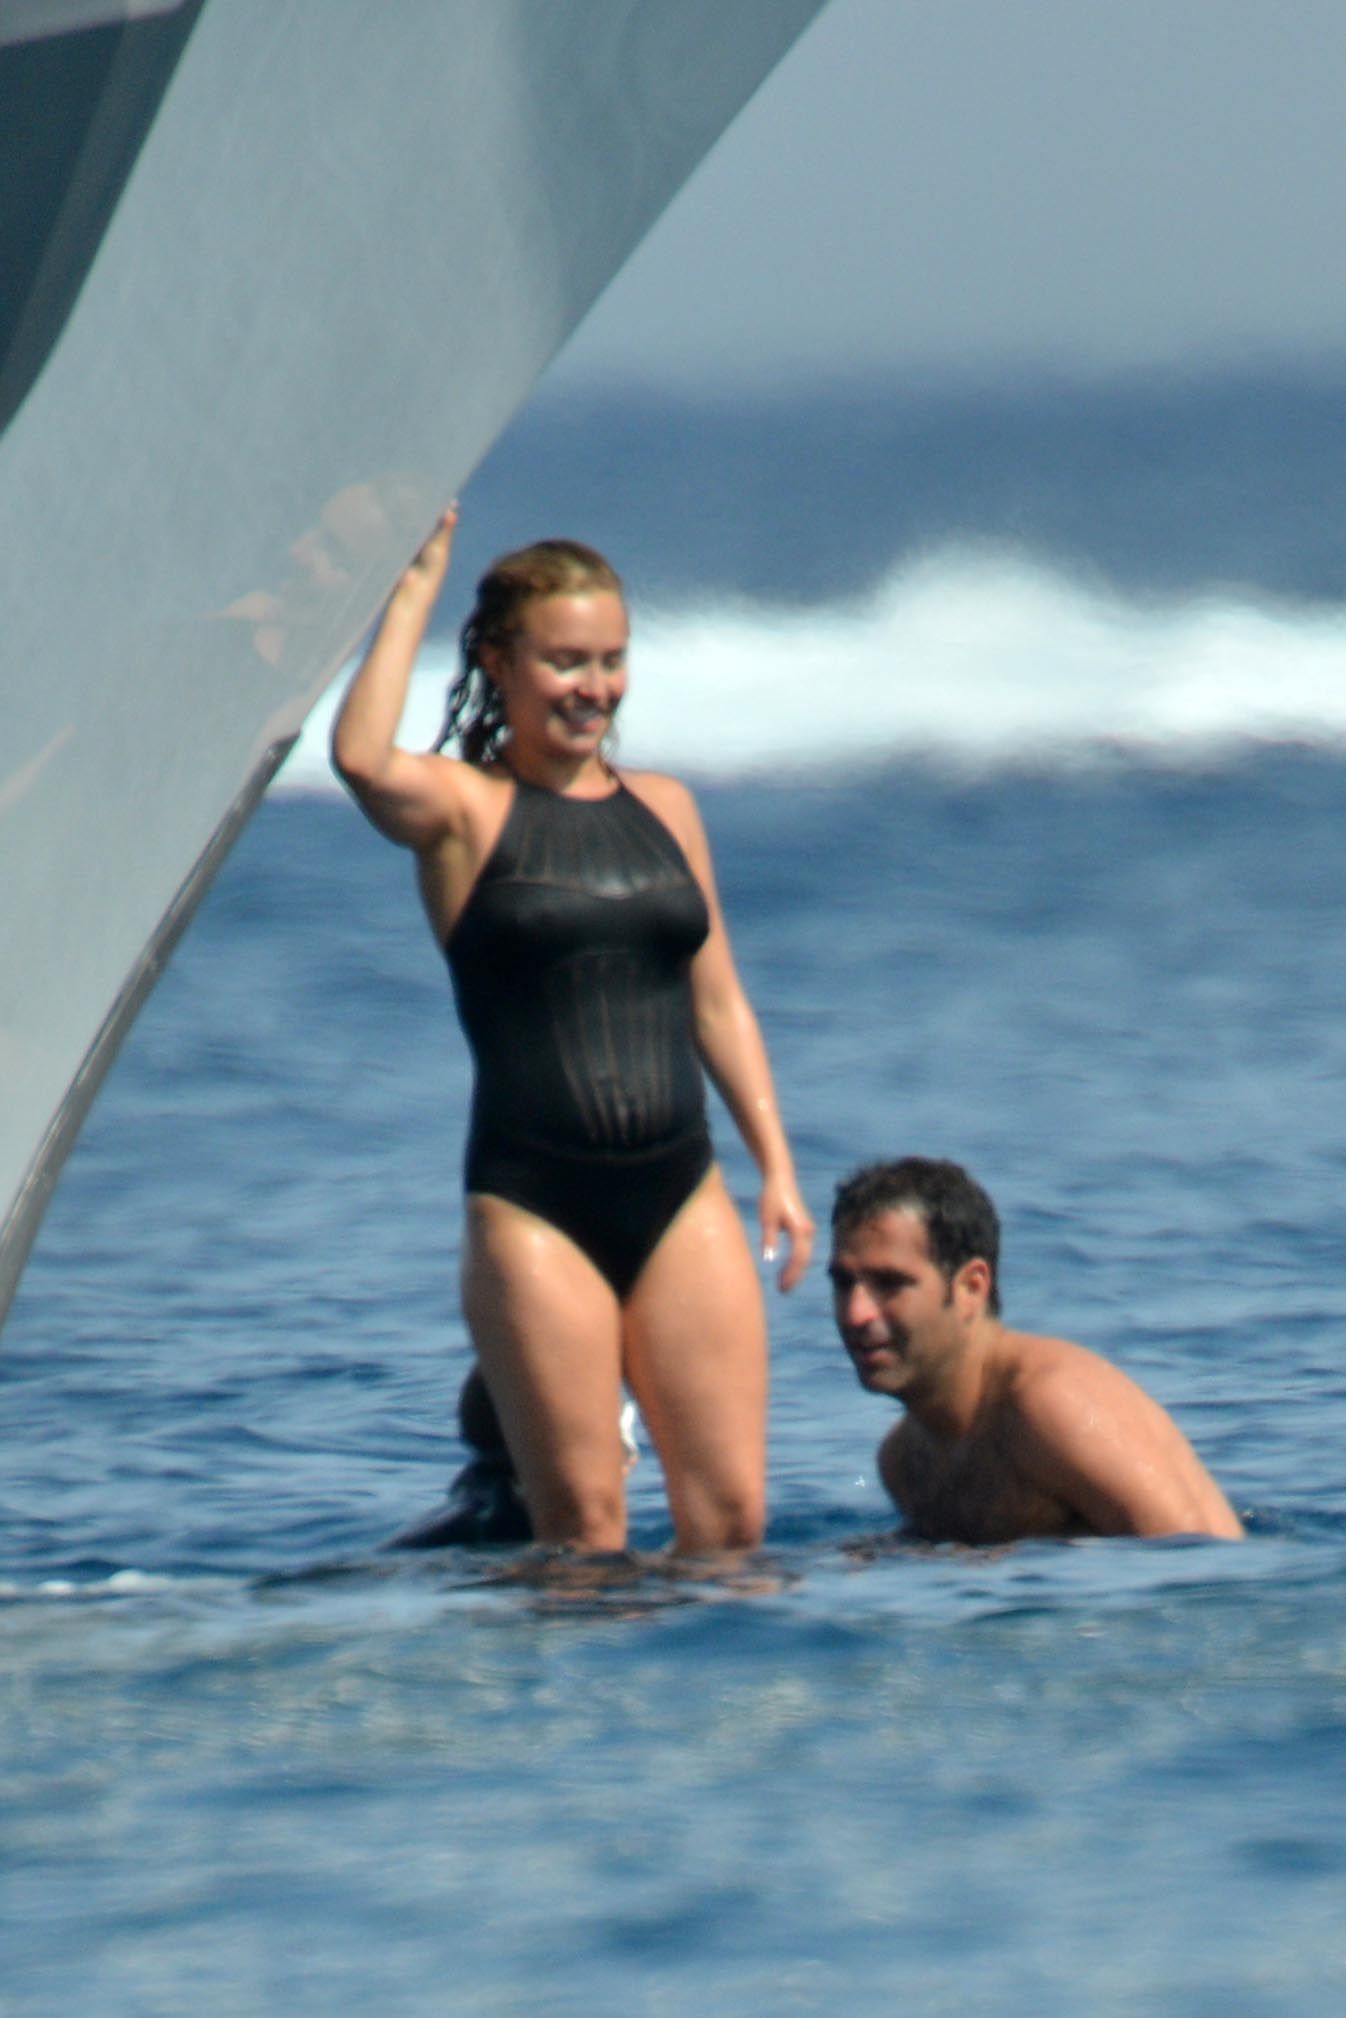 Hayden Panettiere Wearing swimsuit on Yacht in St Tropez. 